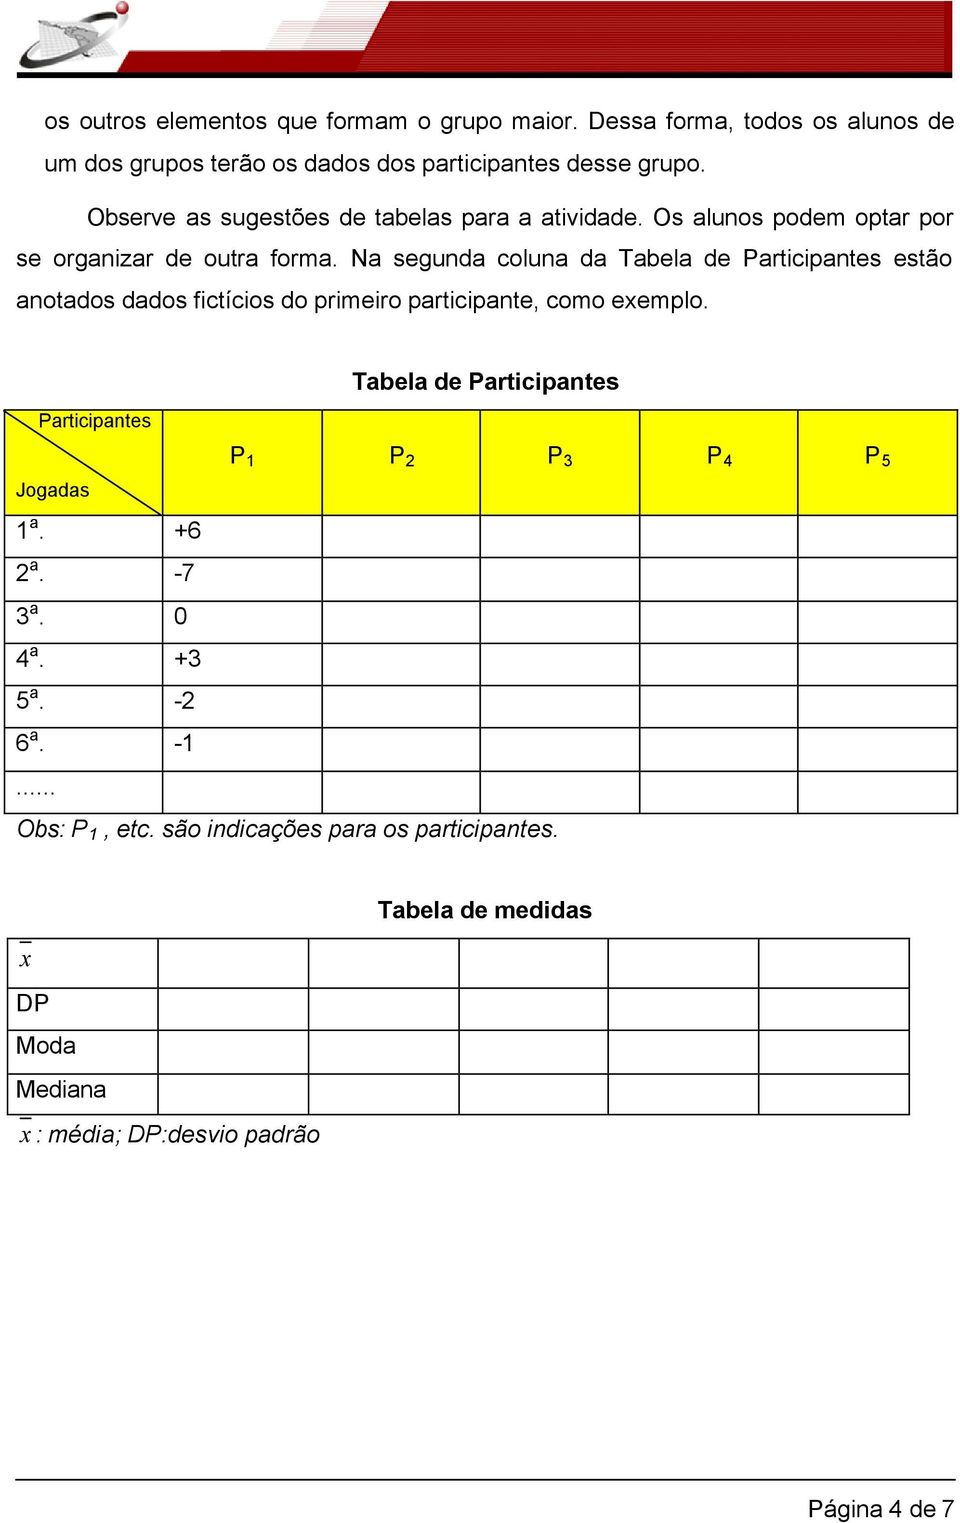 Na segunda coluna da Tabela de Participantes estão anotados dados fictícios do primeiro participante, como exemplo.